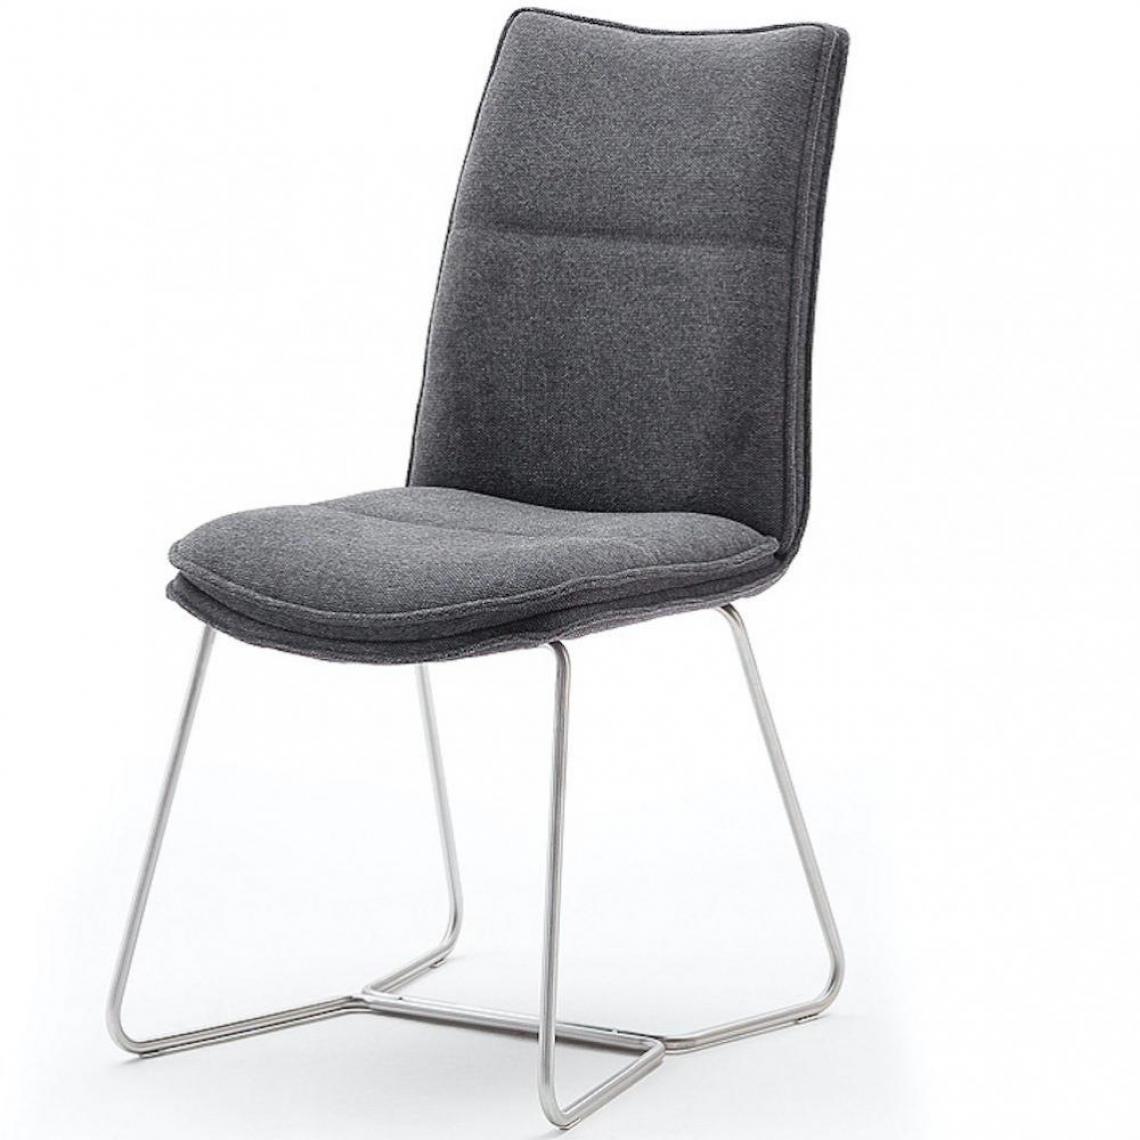 Inside 75 - Lot de 2 chaises design HALSOU tissu anthracite et pieds acier brossé - Chaises